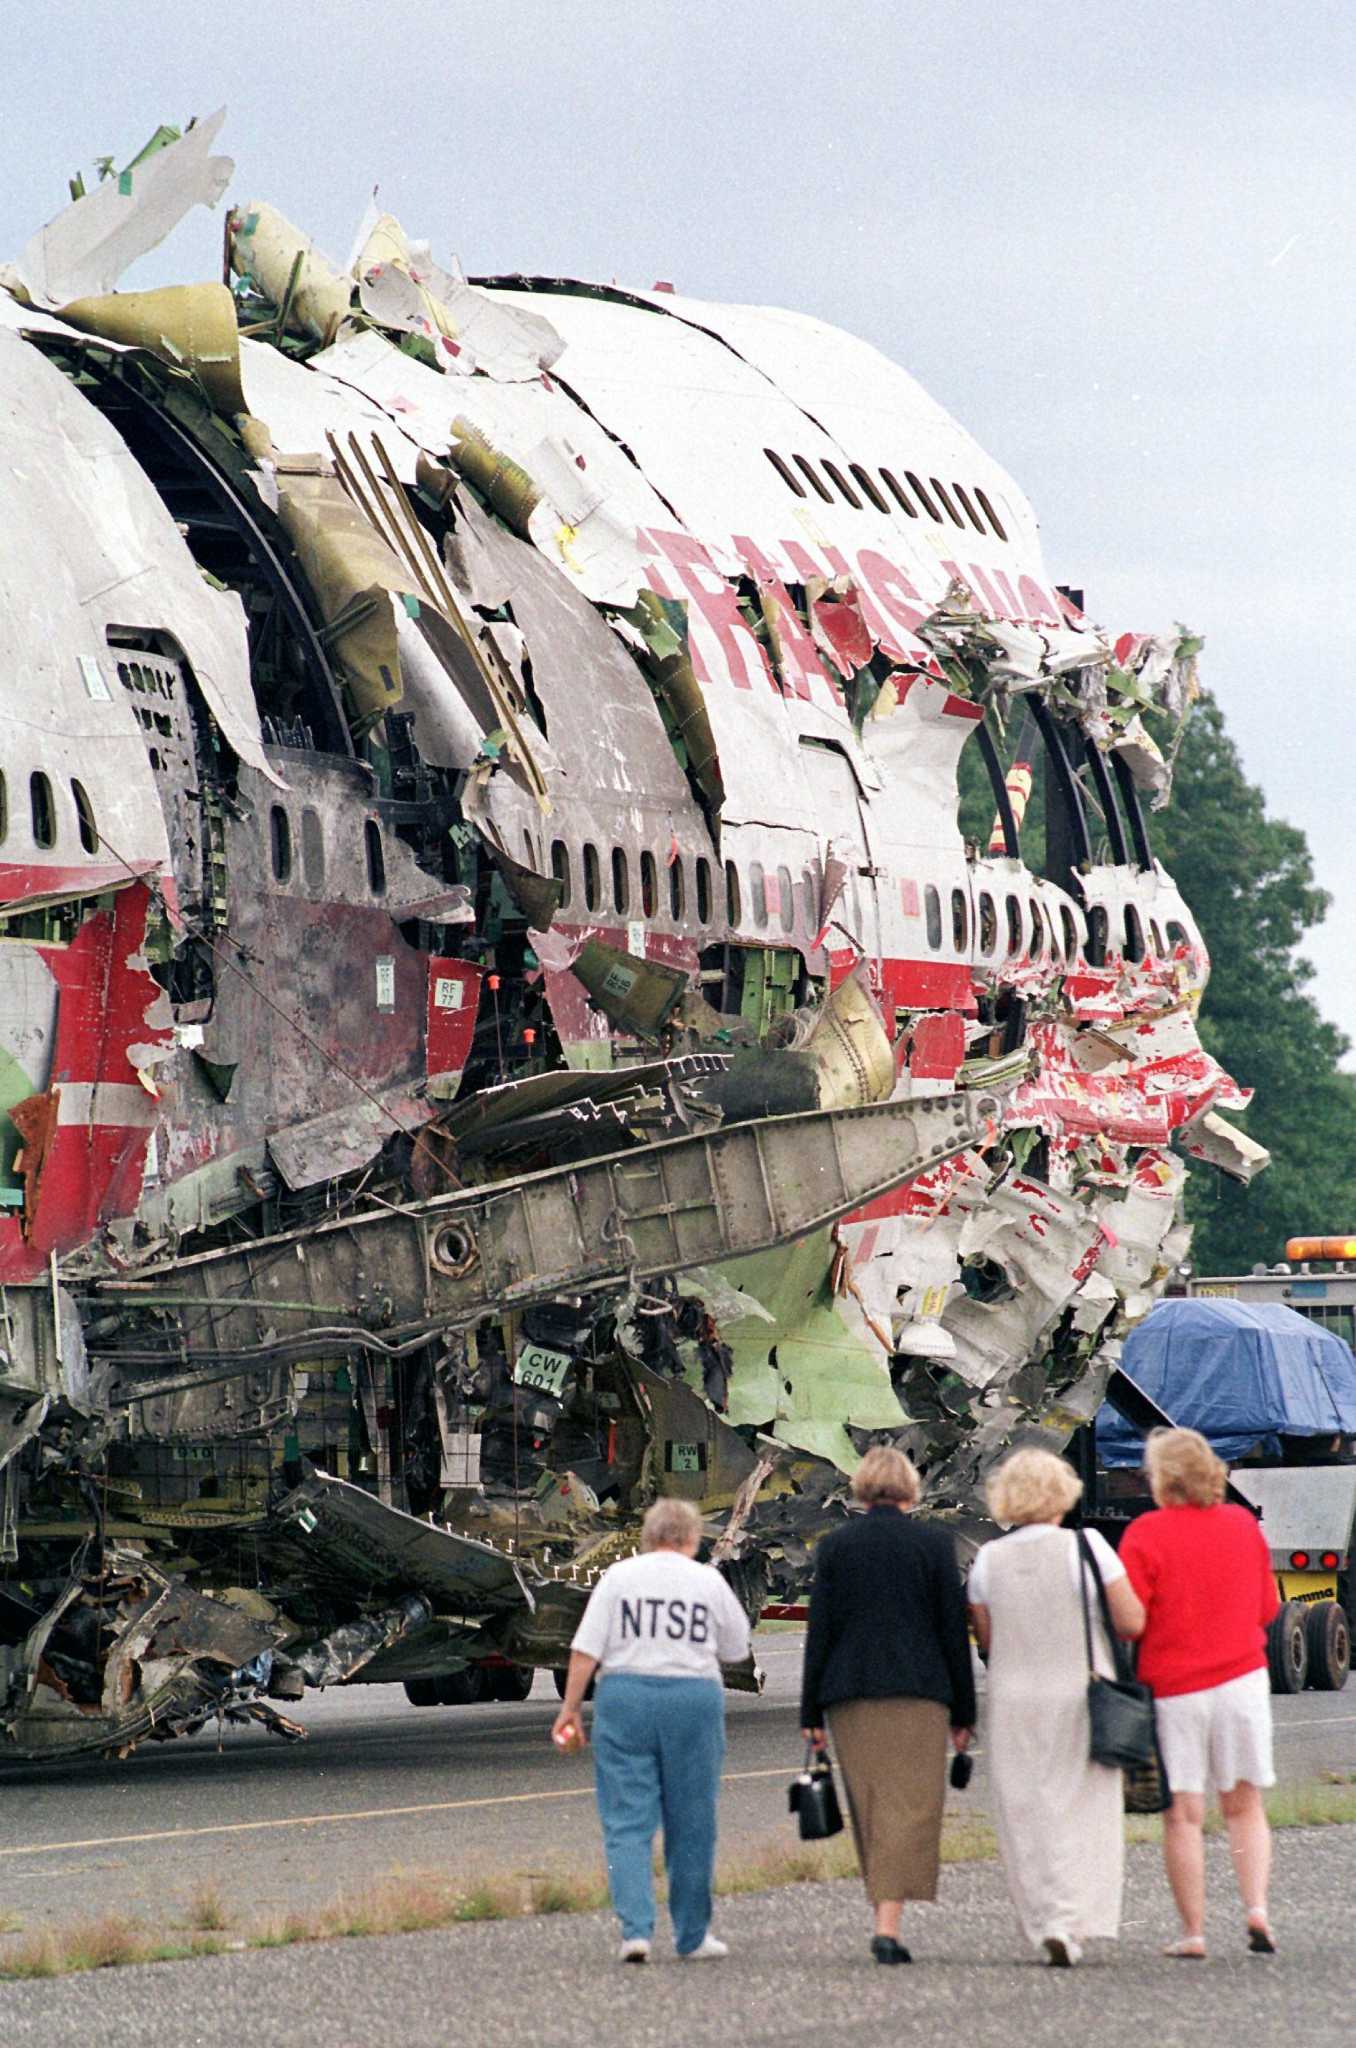 The 1996 Crash of TWA Flight 800